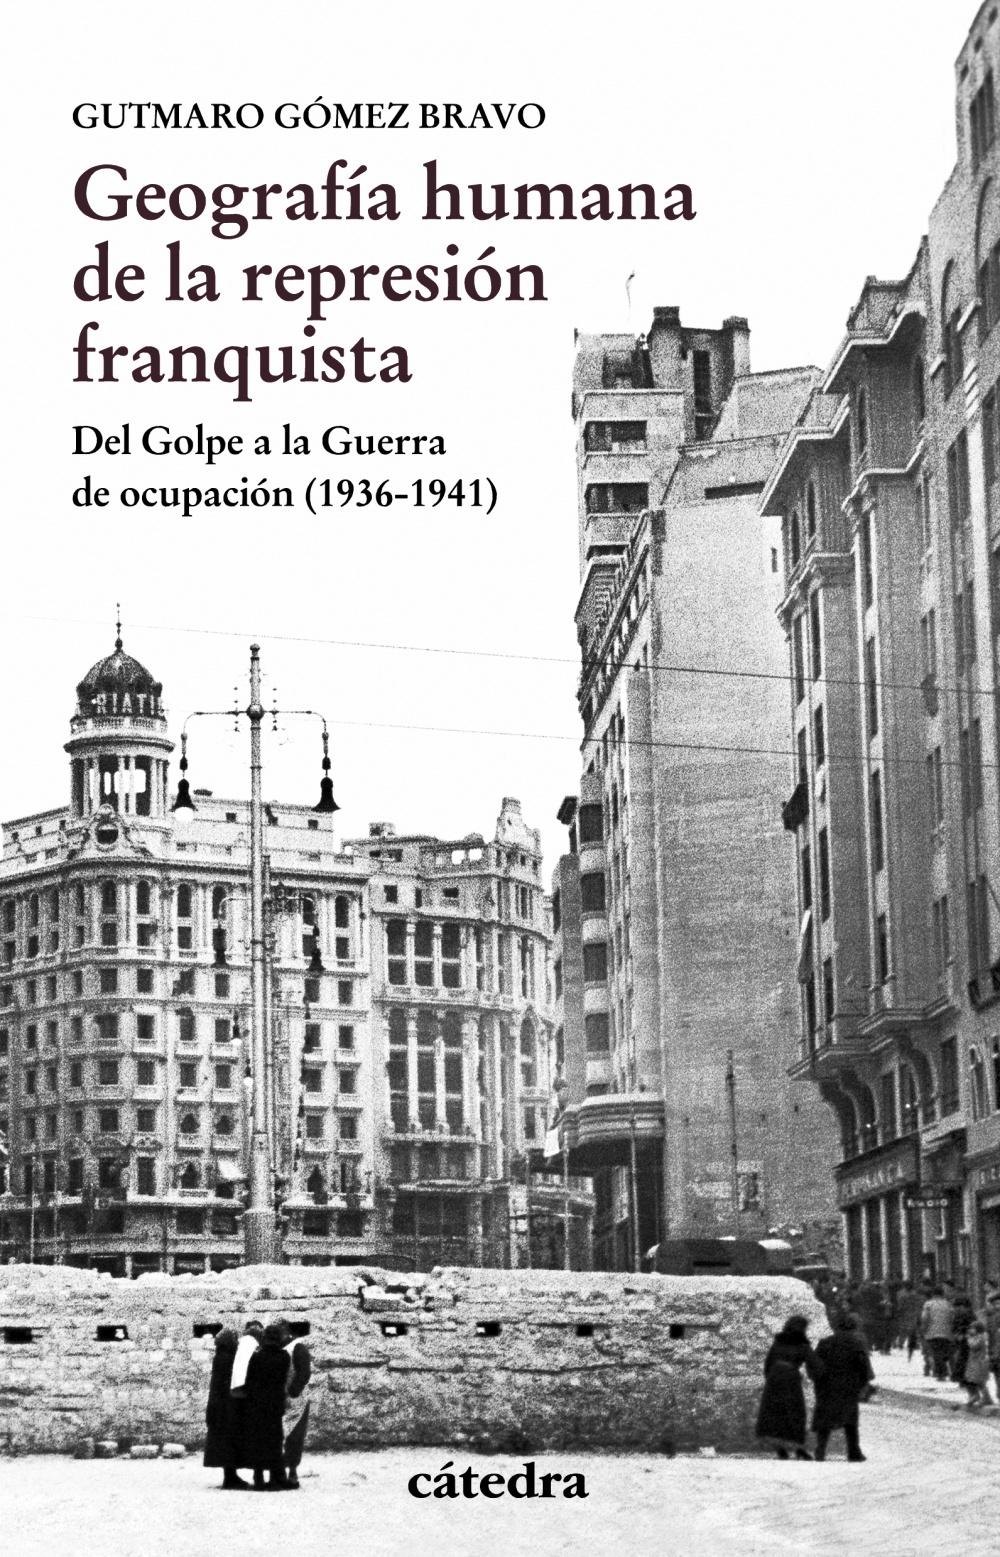 Geografía humana y la represión franquista "Del Golpe a la Guerra de ocupación (1936-1941)". 